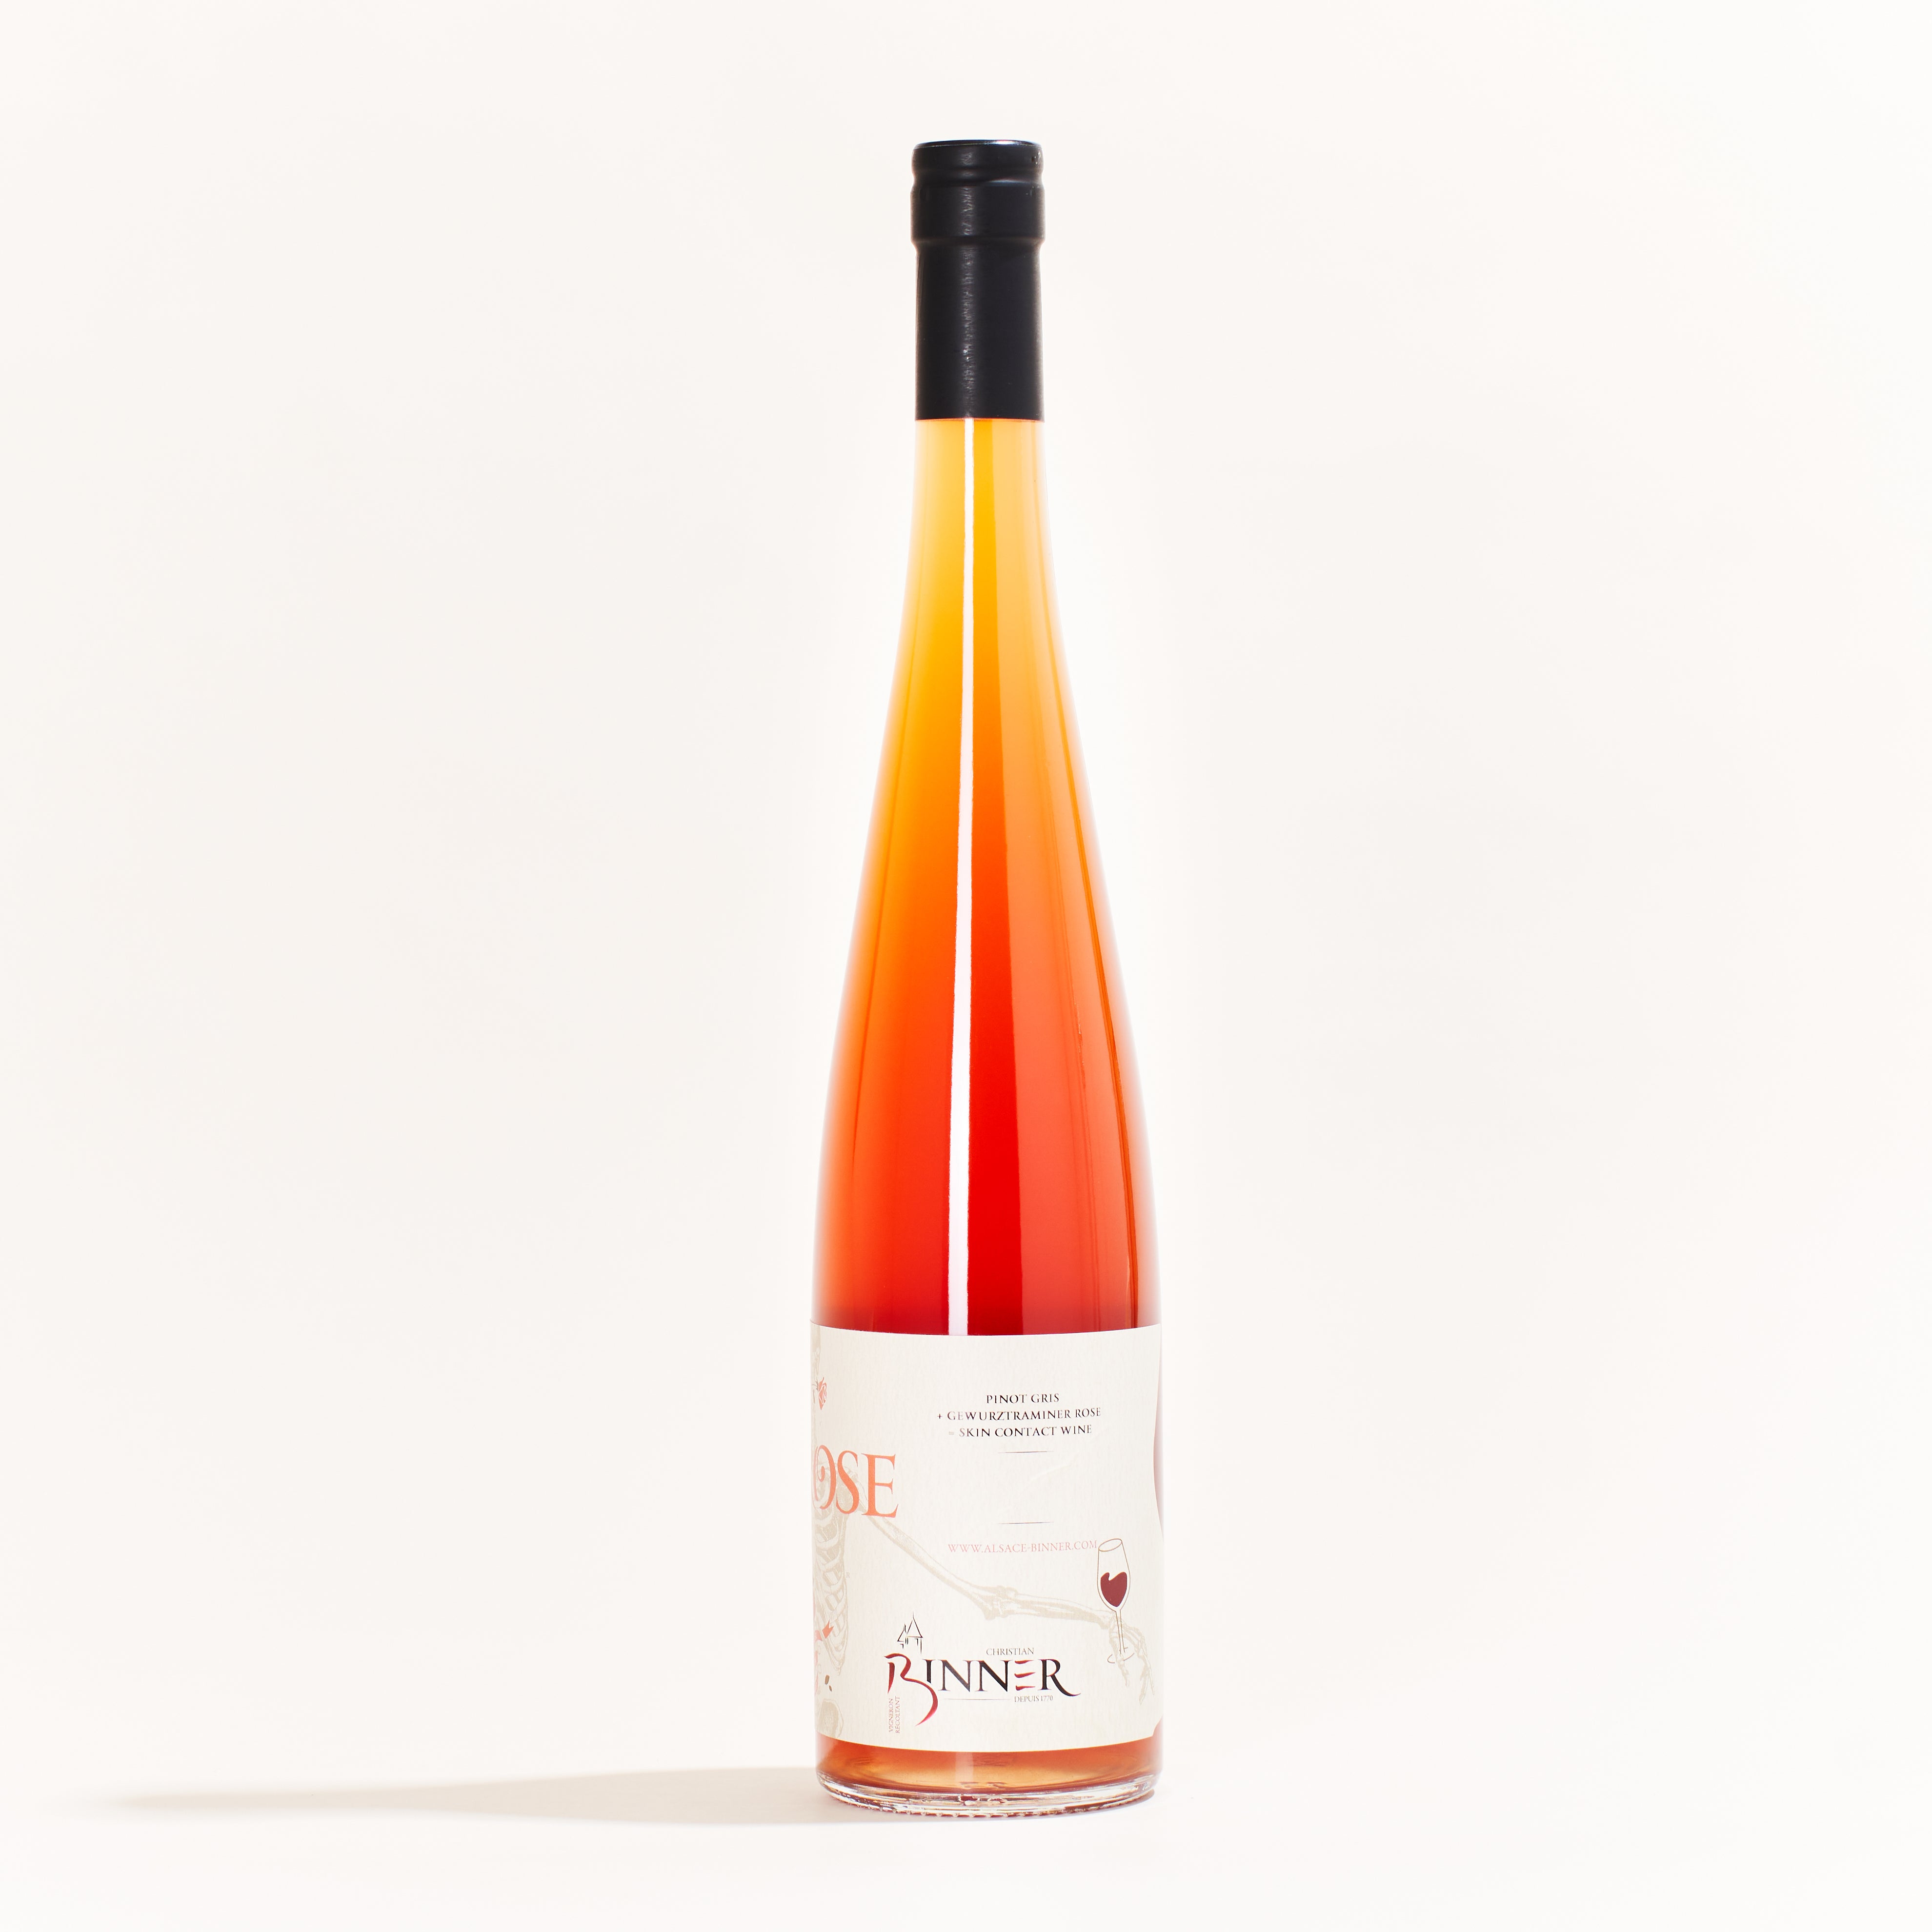 Binner Si Rose Pinot Gris natural orange wine Alsace France side label